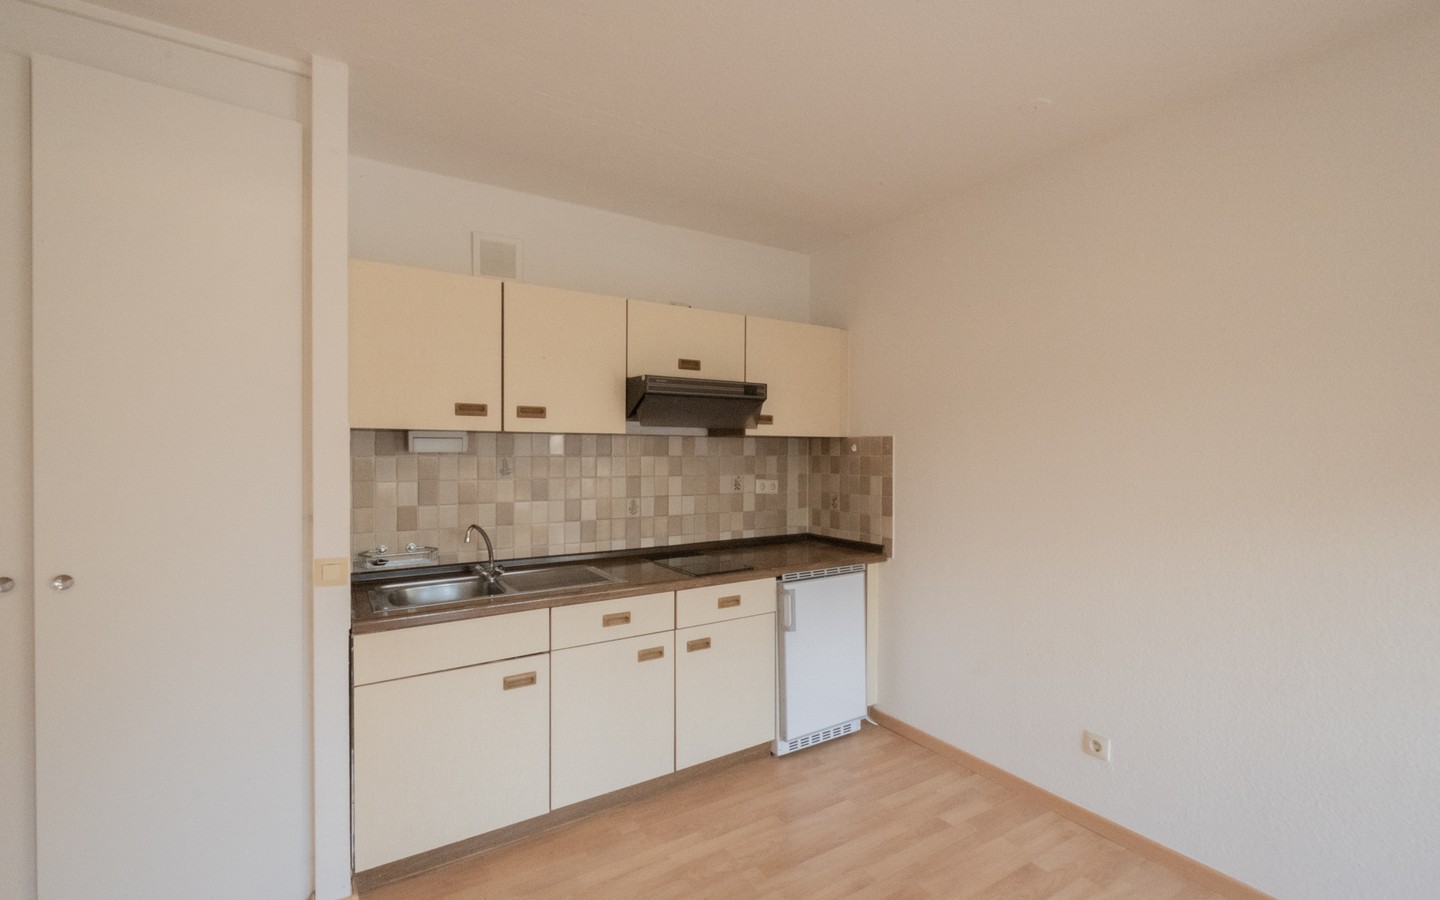 Küchenzeile - Eppelheim: 1-Zimmer-Wohnung mit Balkon und TG-Stellplatz